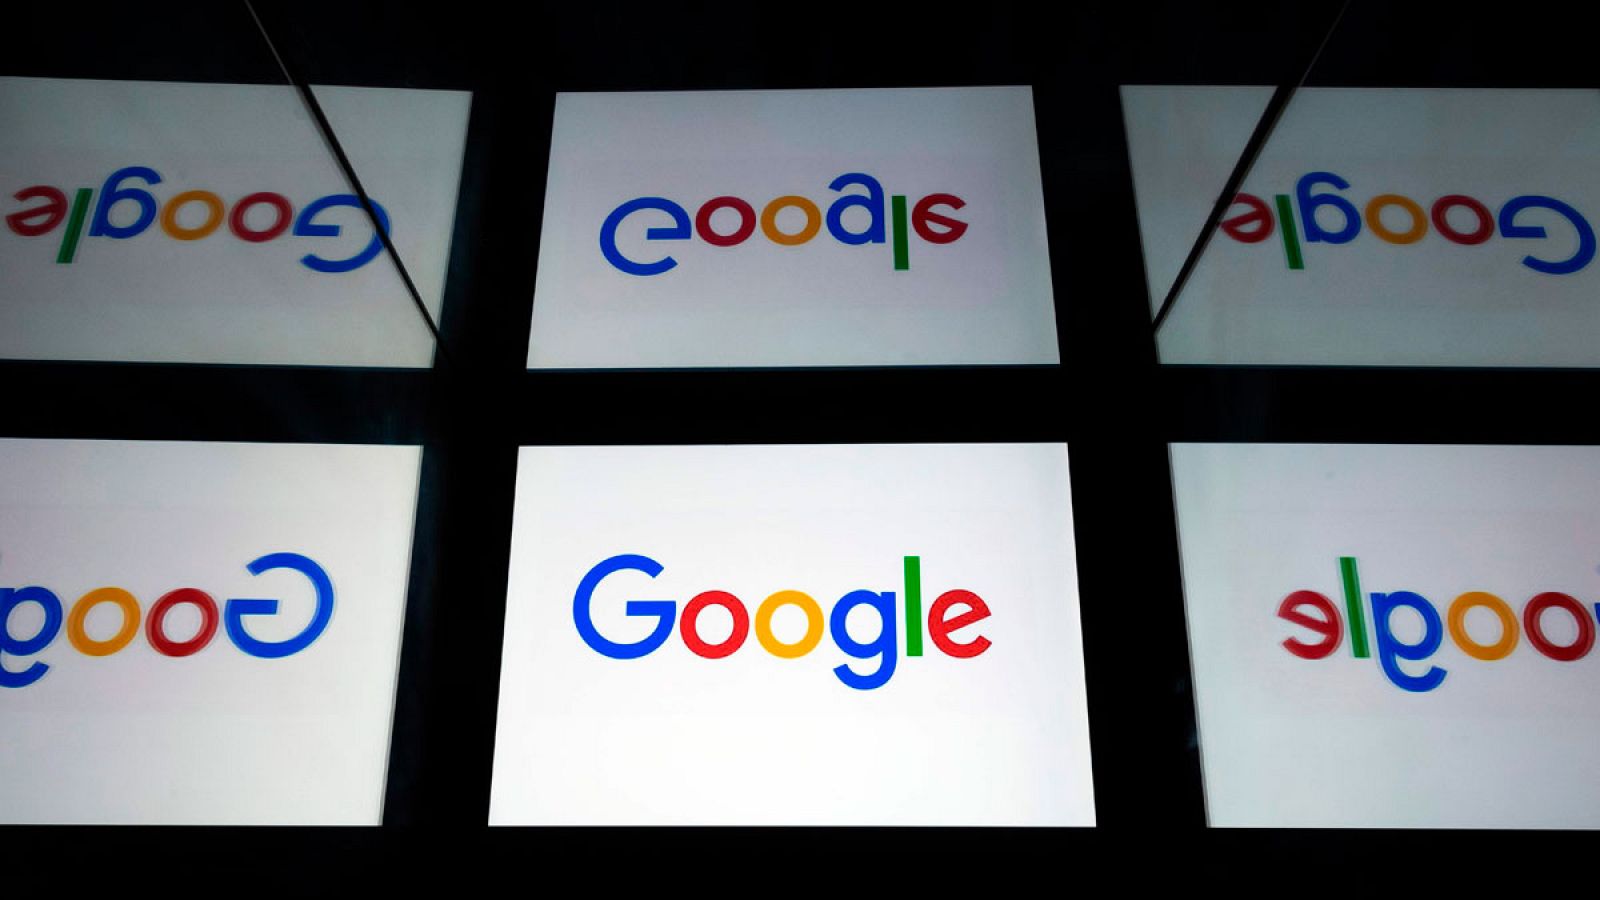 La OCDE propone una Tasa Google mundial para que los gigantes digitales paguen en función de dónde estén sus usuarios. La propuesta se debatirá en el G20 de la próxima semana para intentar cerrar un acuerdo.